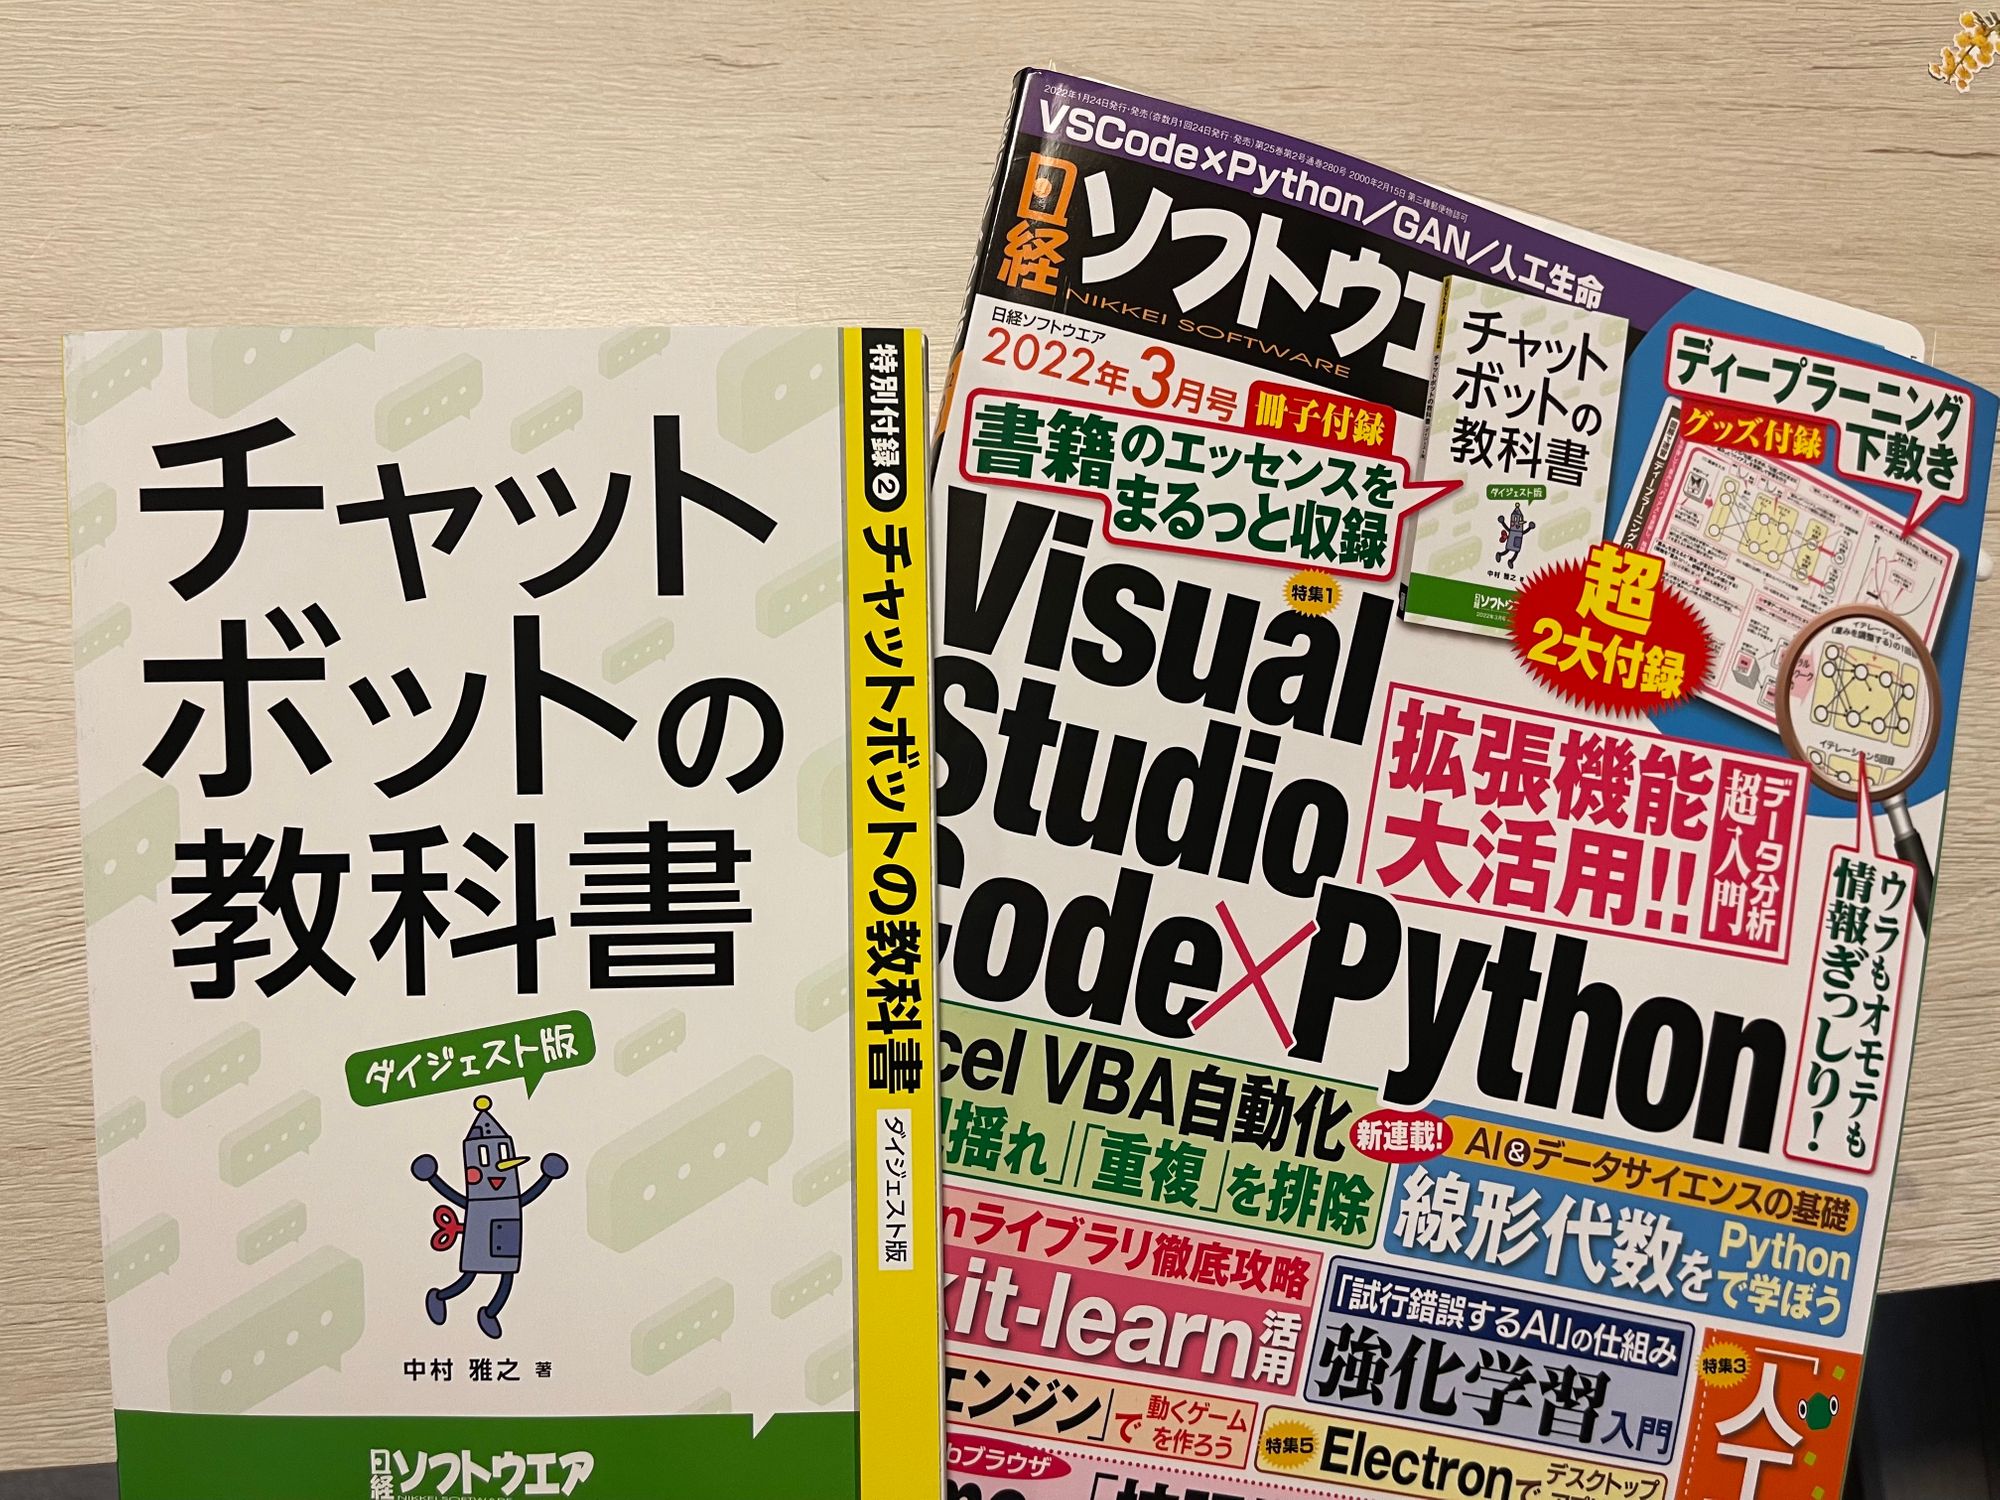 「チャットボットの教科書」が日経ソフトウエア2022年3月号の付録になりました